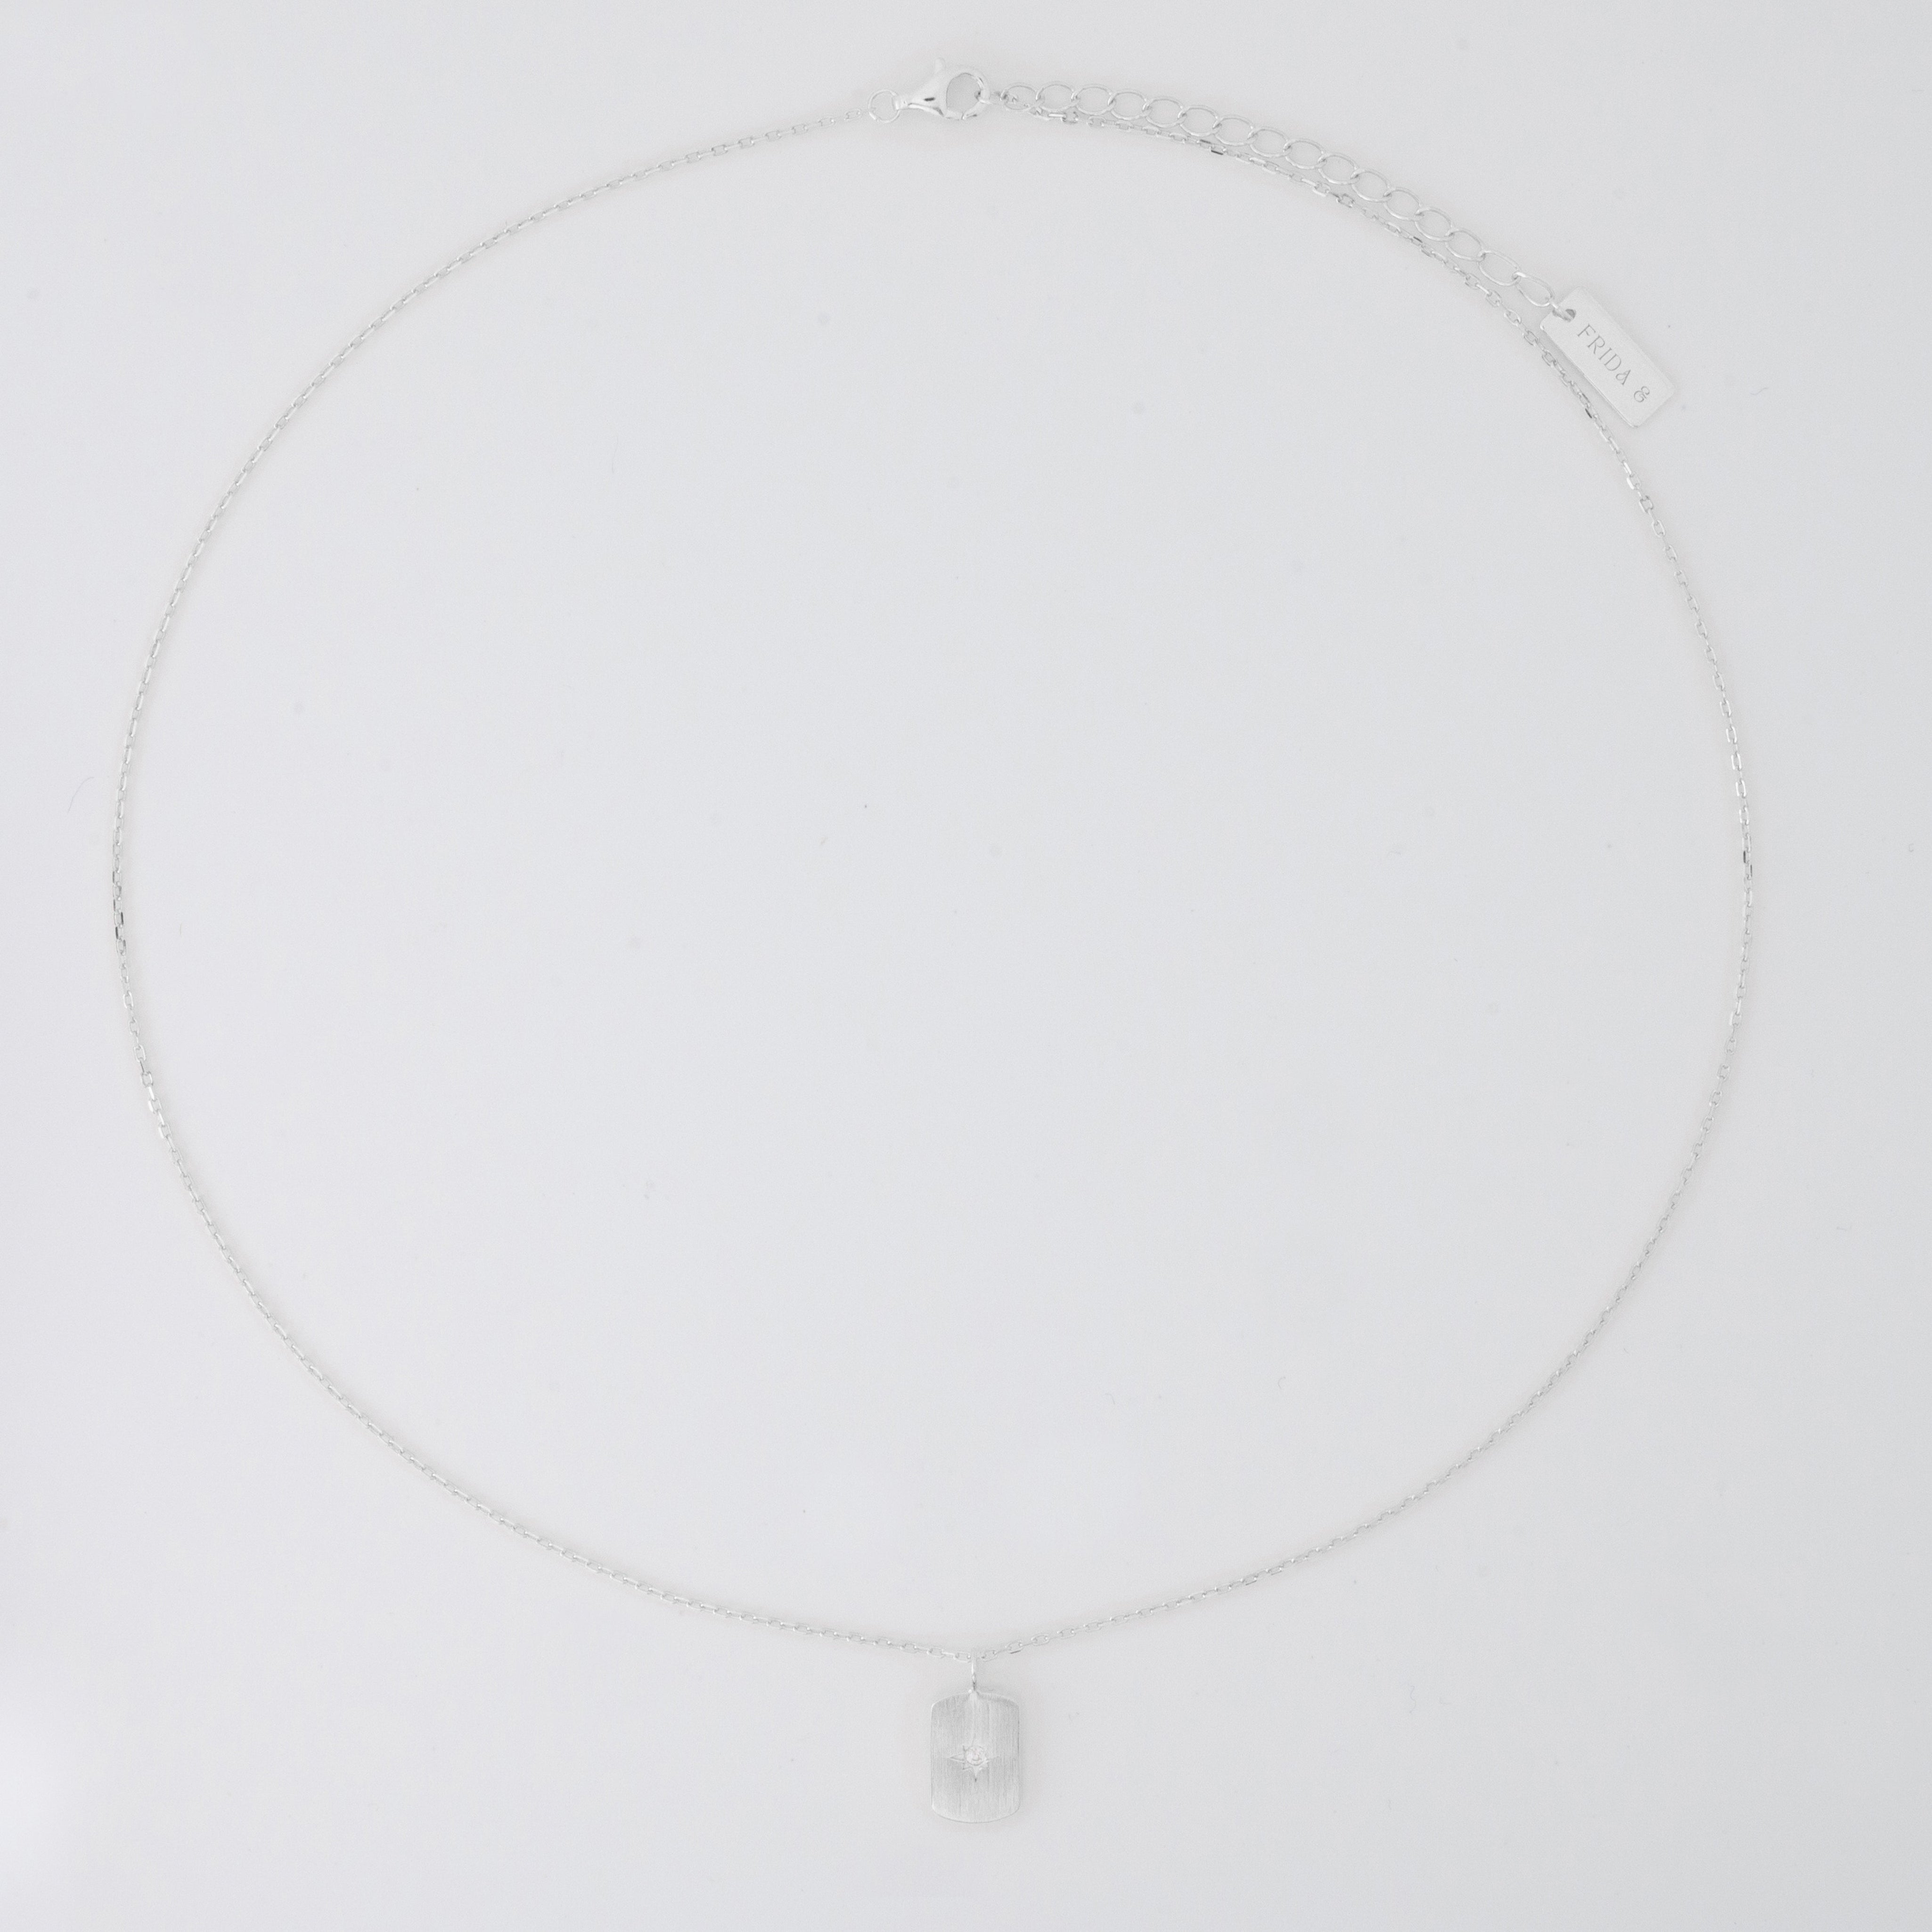 Stella Silver Pendant Necklace